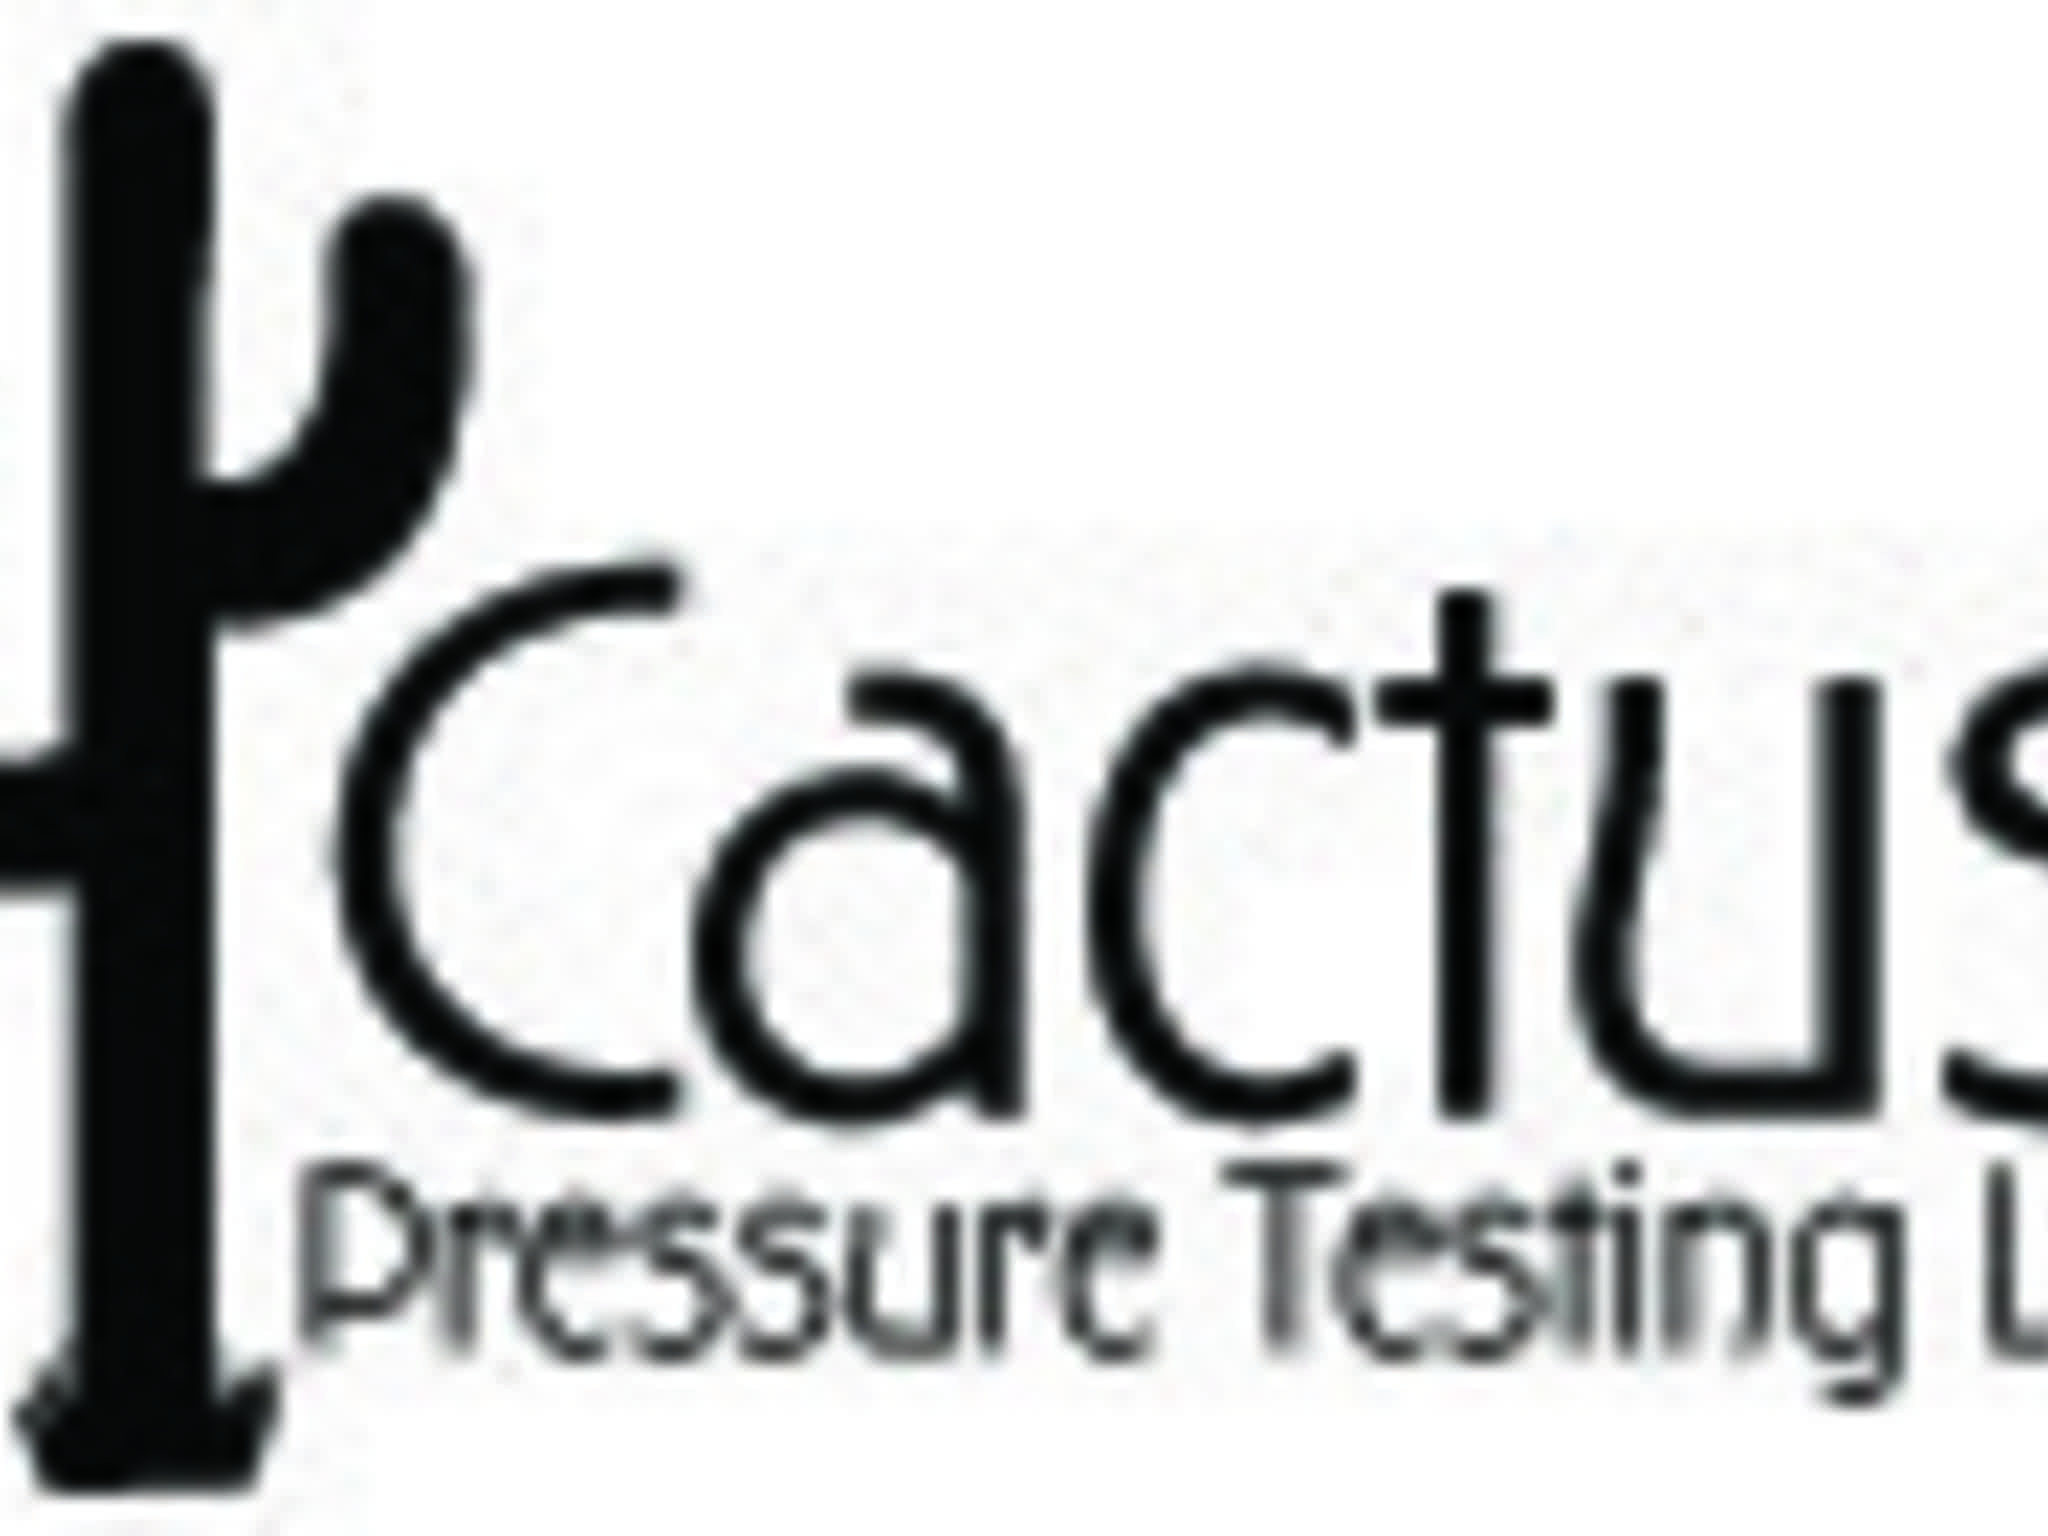 photo Cactus Pressure Testing